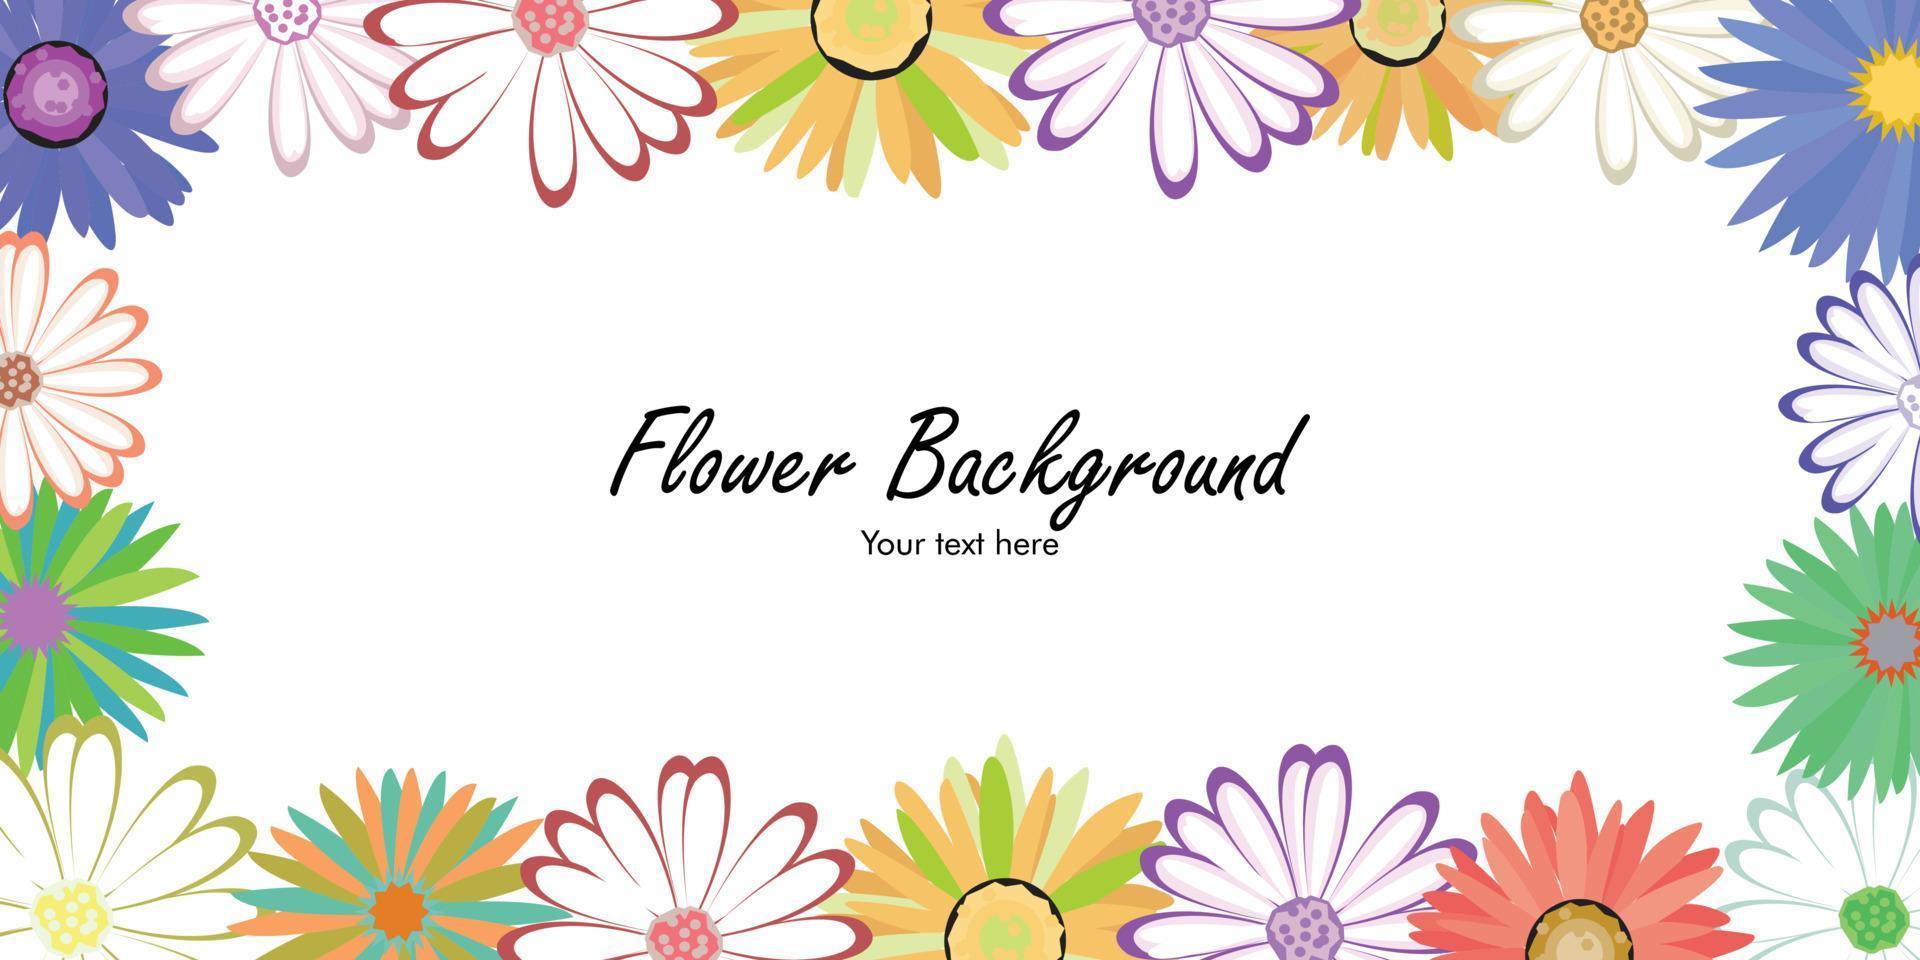 Blumenhintergrund mit schönen bunten Blumen. Frühling auf weißem Hintergrund vektor